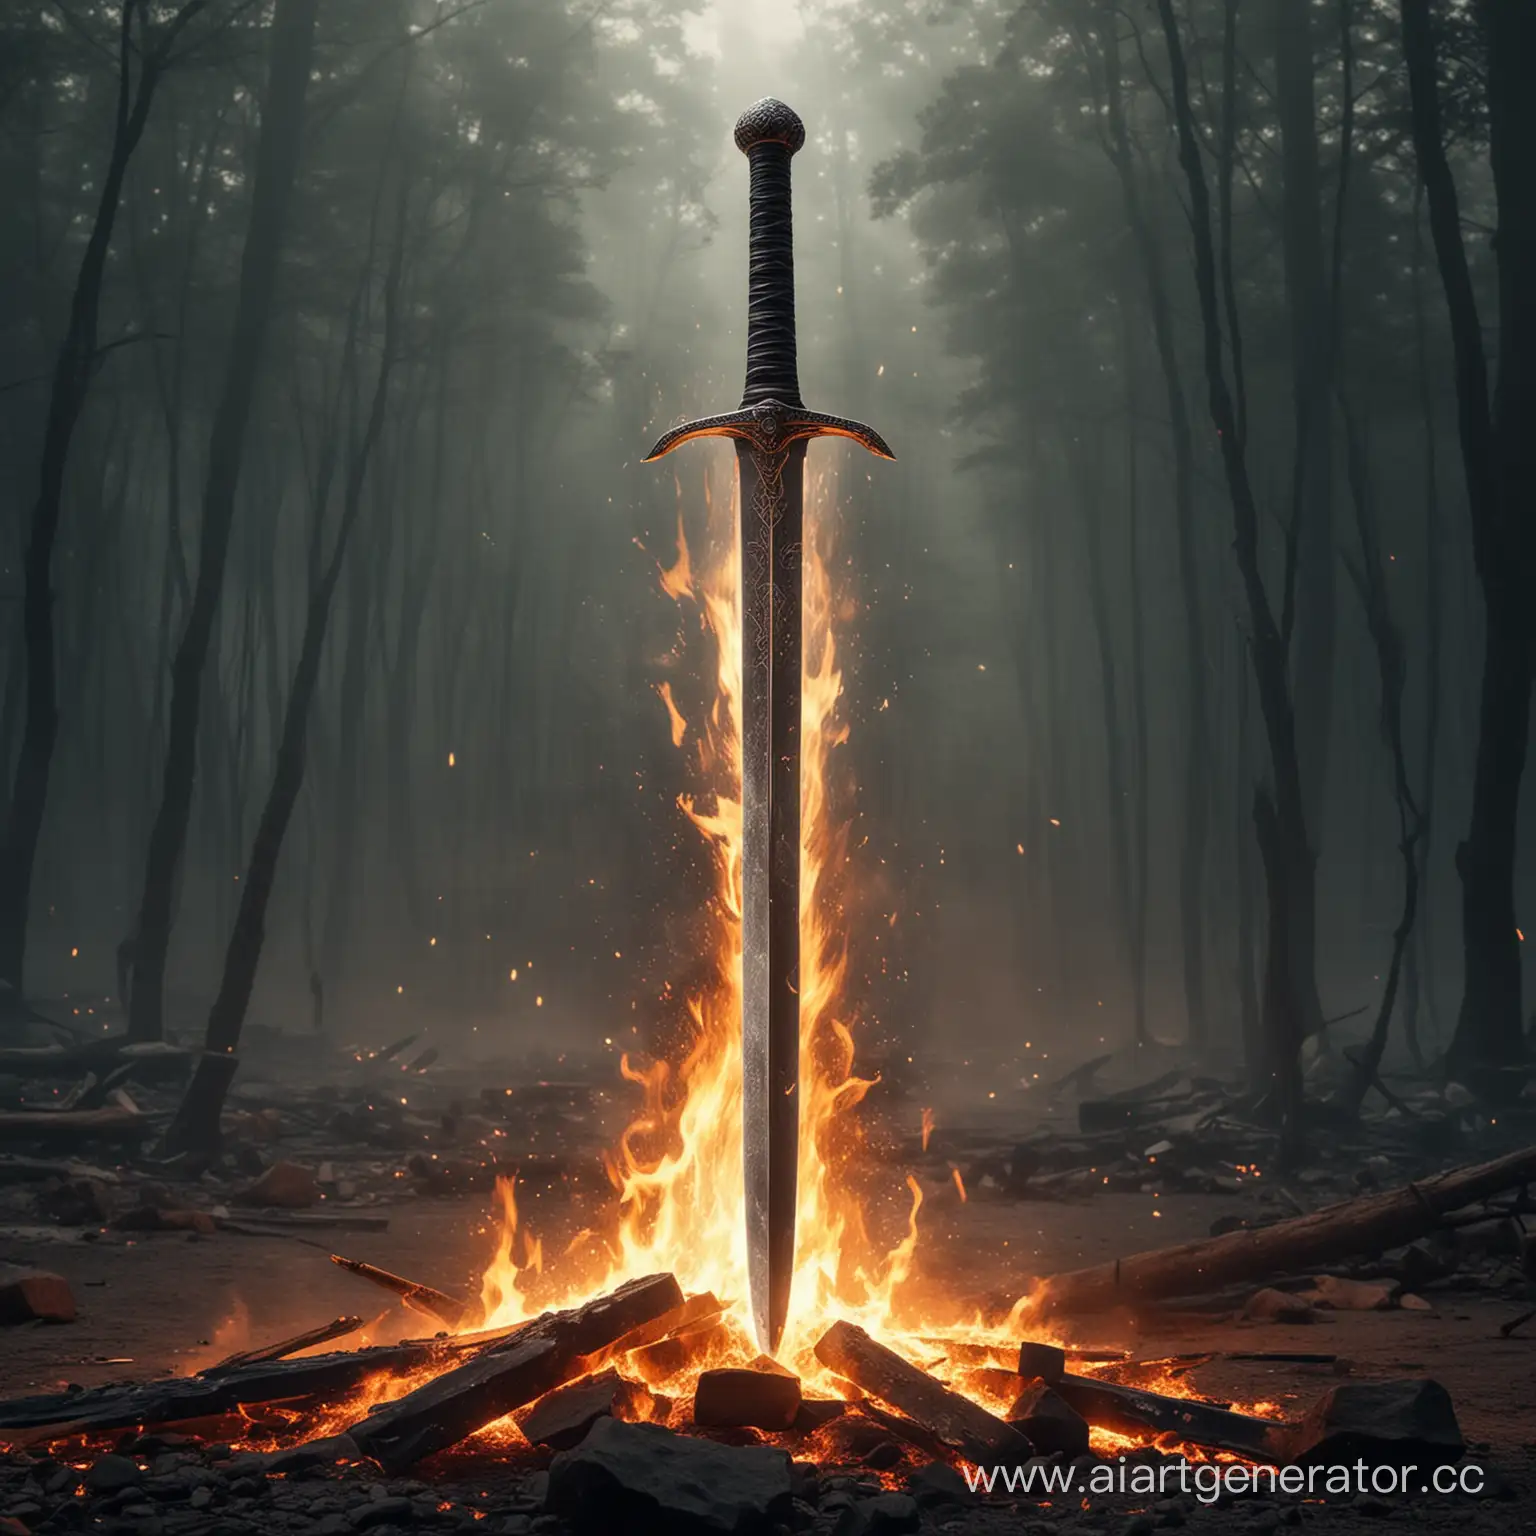 меч из стали в огне без человека
